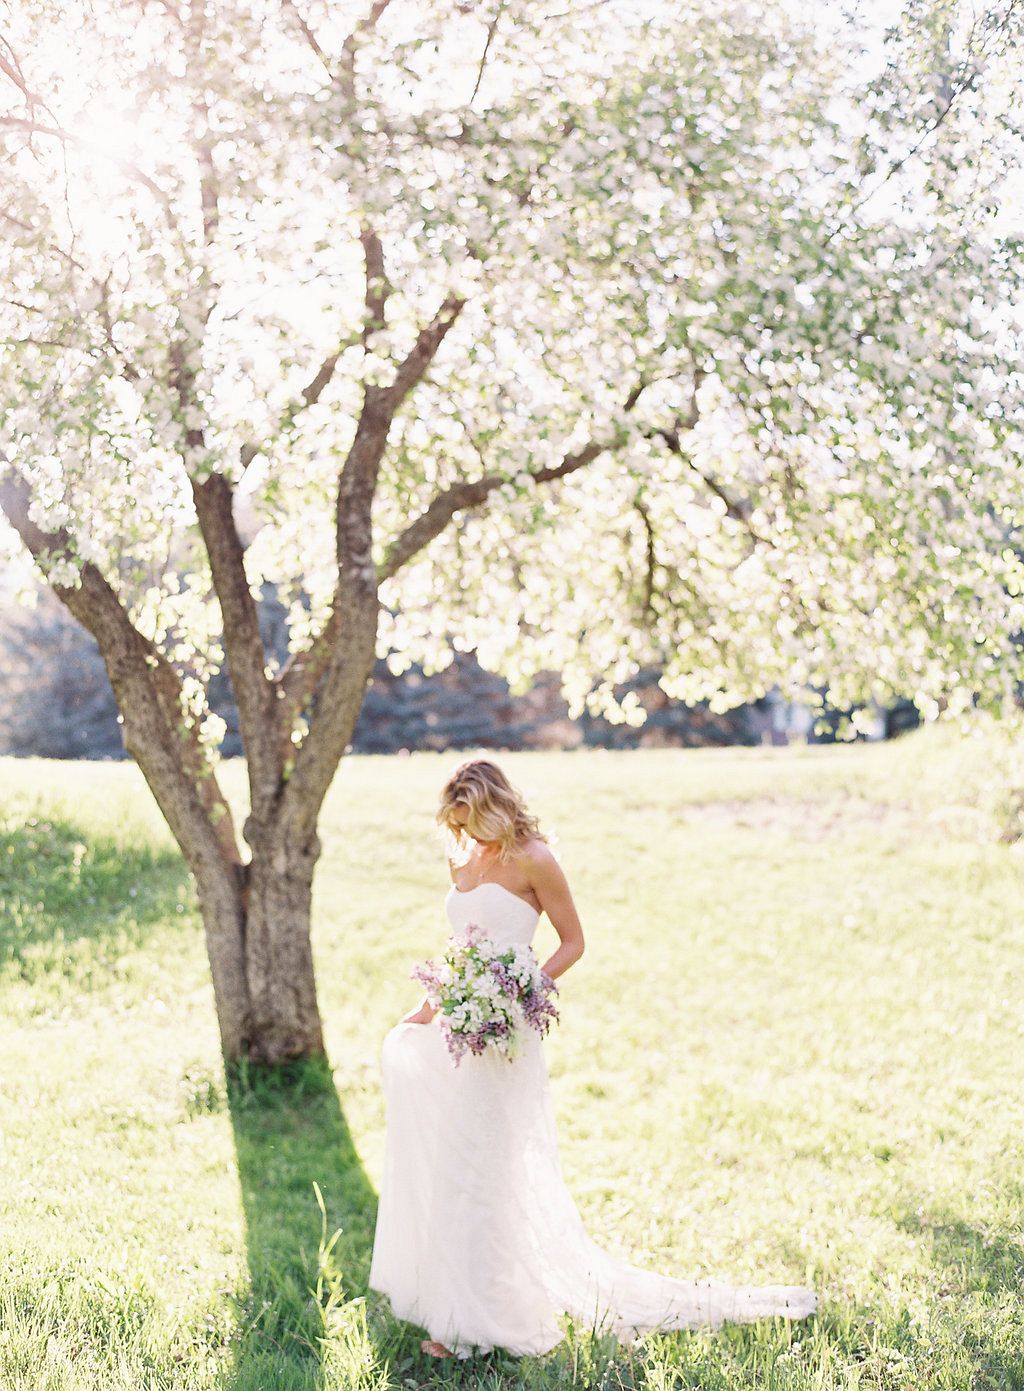 Pale lilac tones for a spring bridal bouquet